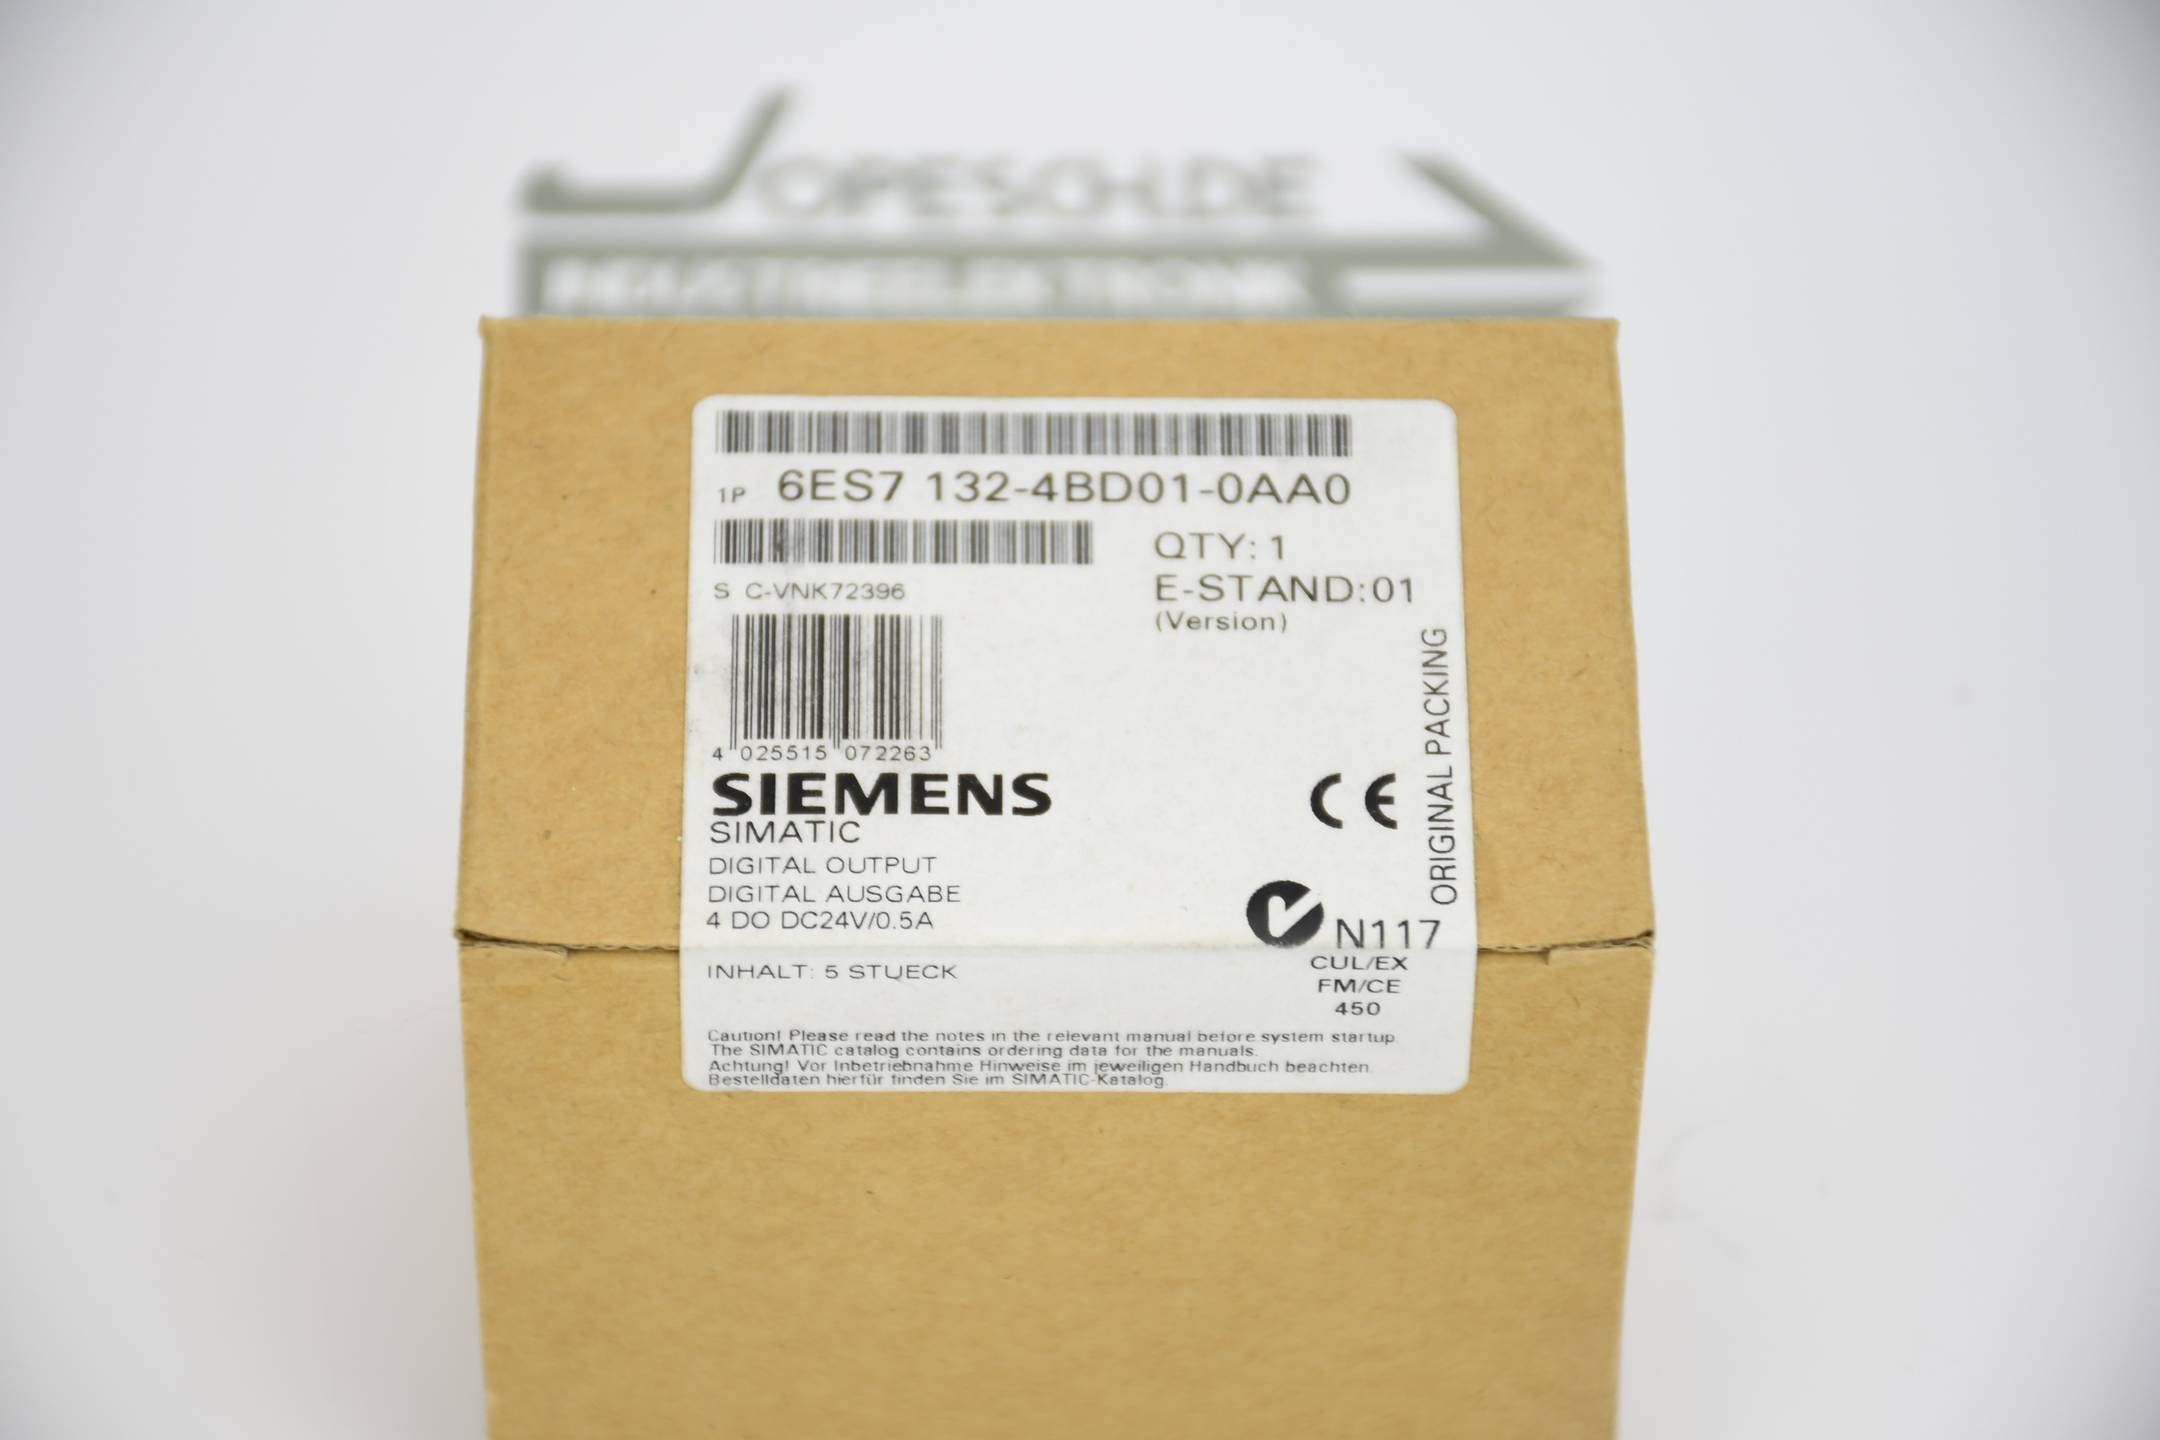 Siemens simatic DP ET 200S Modul 6ES7 132-4BD01-0AA0 ( 6ES7132-4BD01-0AA0 )